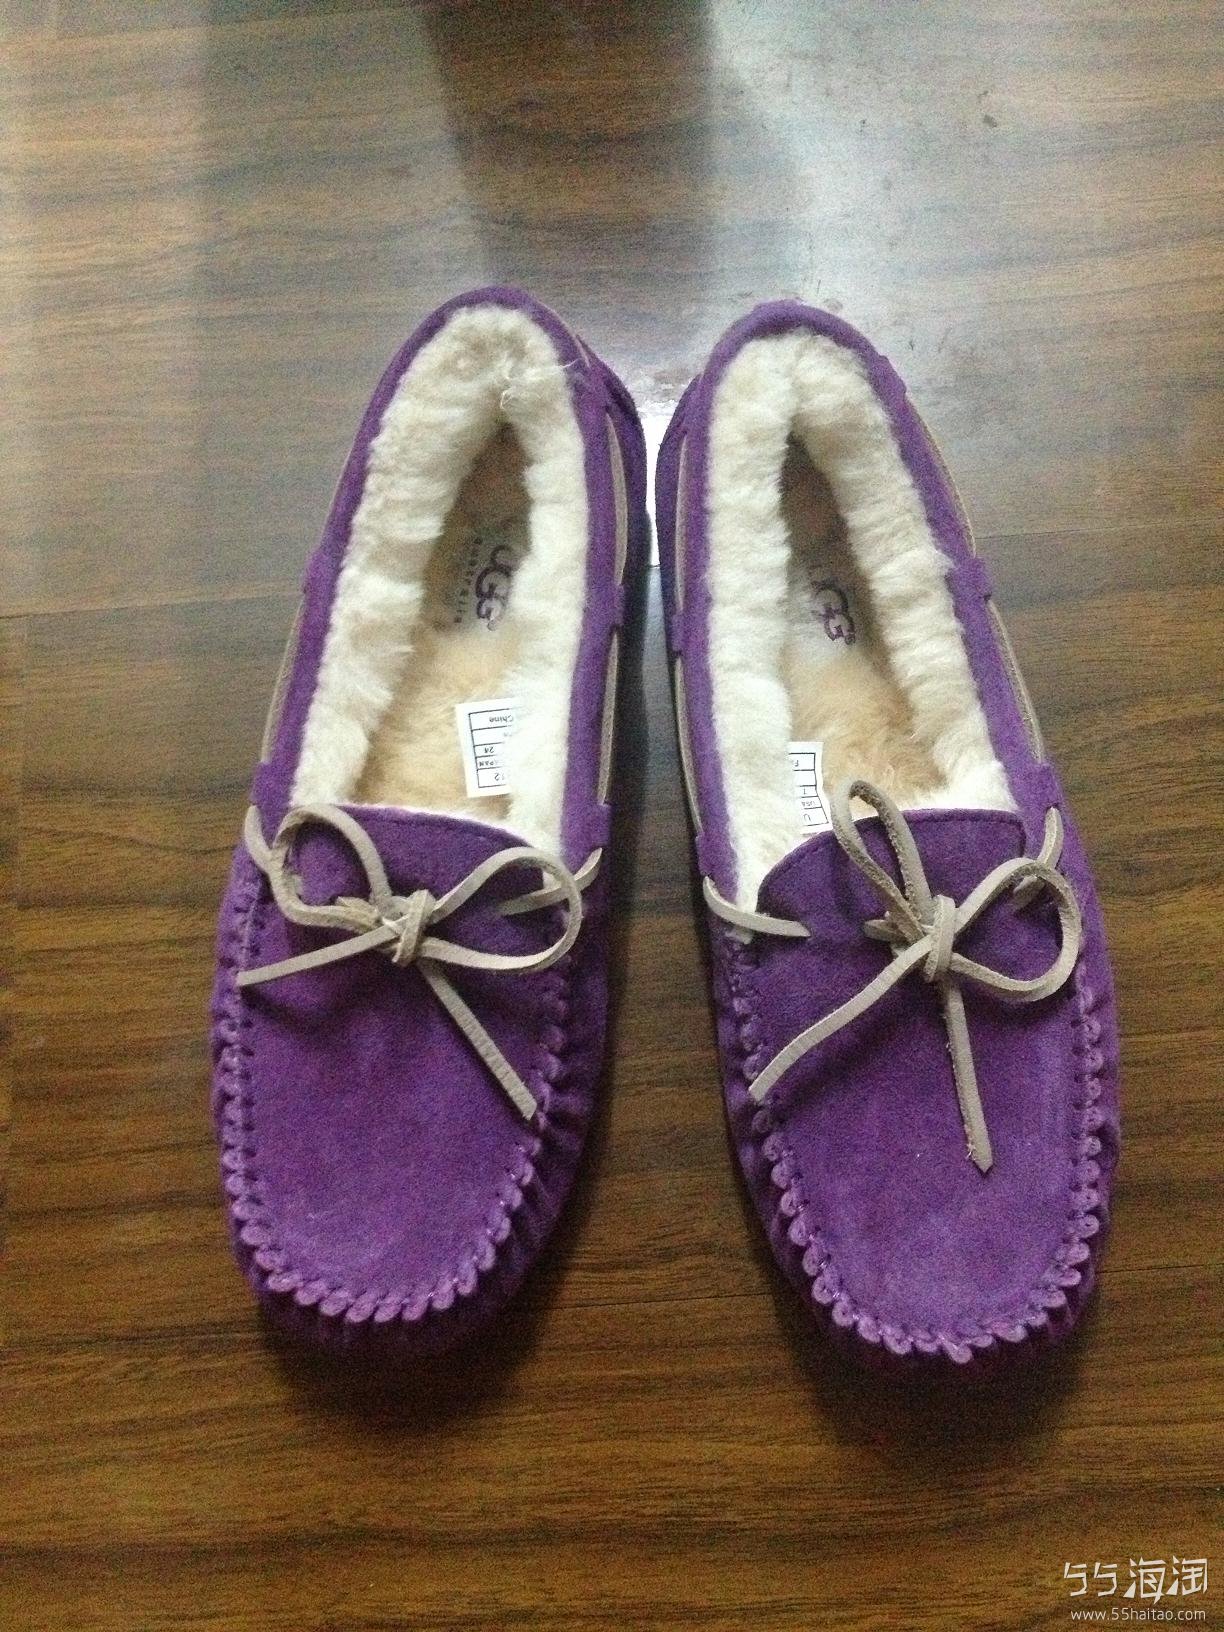 UGG 豆豆鞋 紫色的 7号 本人36-37的脚,鞋子大